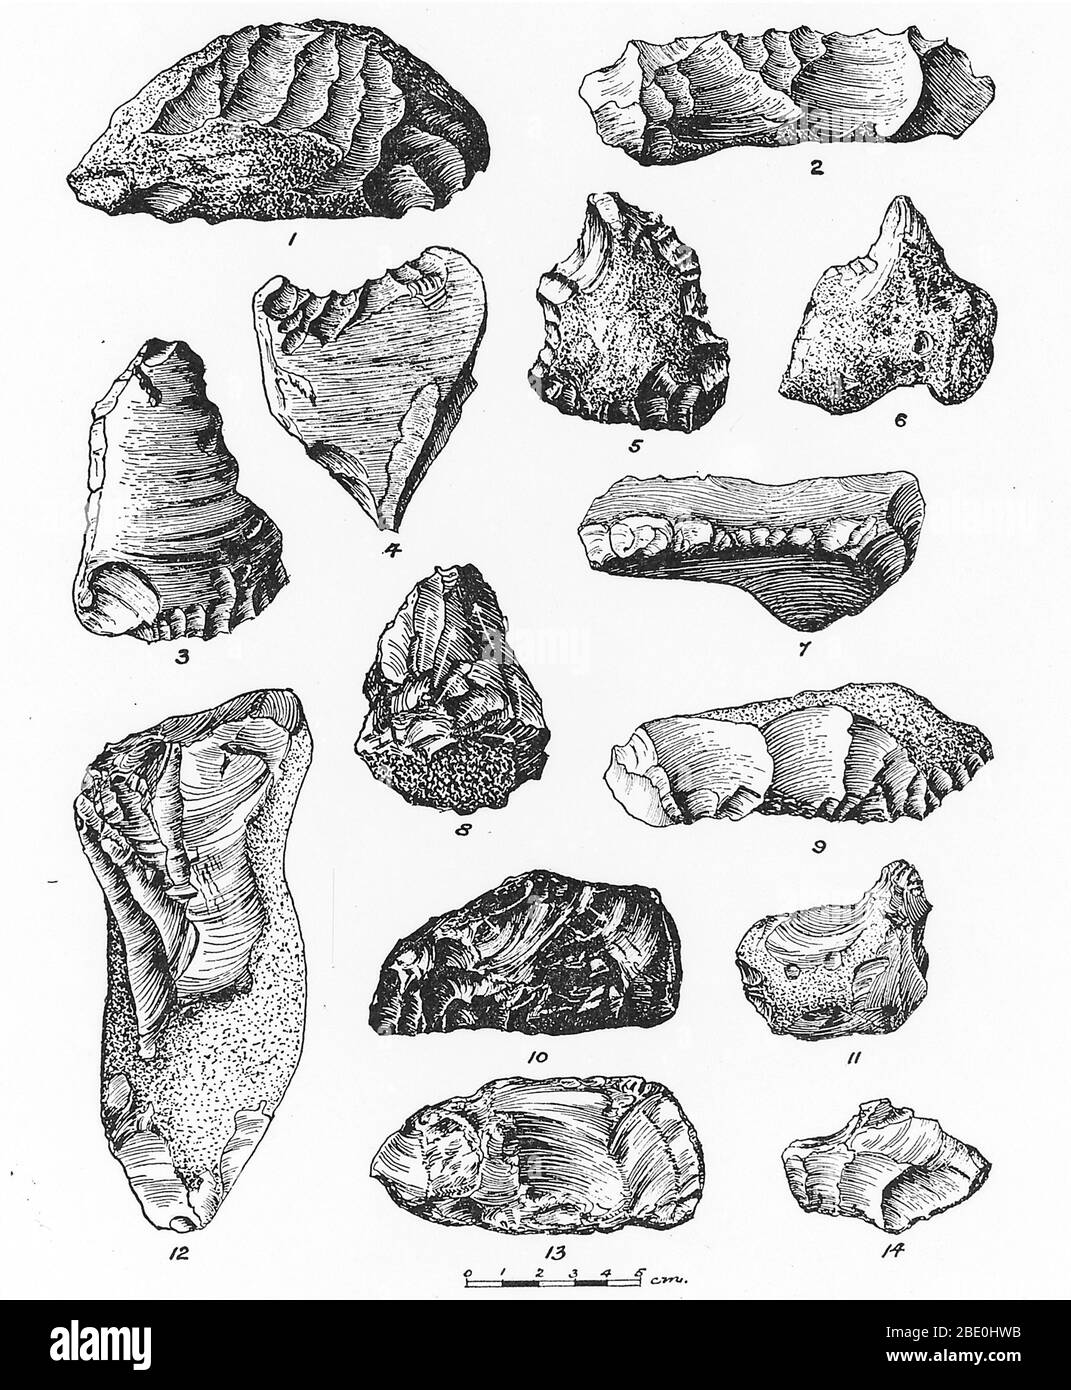 Eolithes de France, Belgique et Angleterre. Un eulithème est un nodule à écaillage. Les Eolithes étaient autrefois considérés comme des artefacts, les premiers outils en pierre, mais sont maintenant censés être produits naturellement par des processus géologiques tels que la glaciation. Banque D'Images